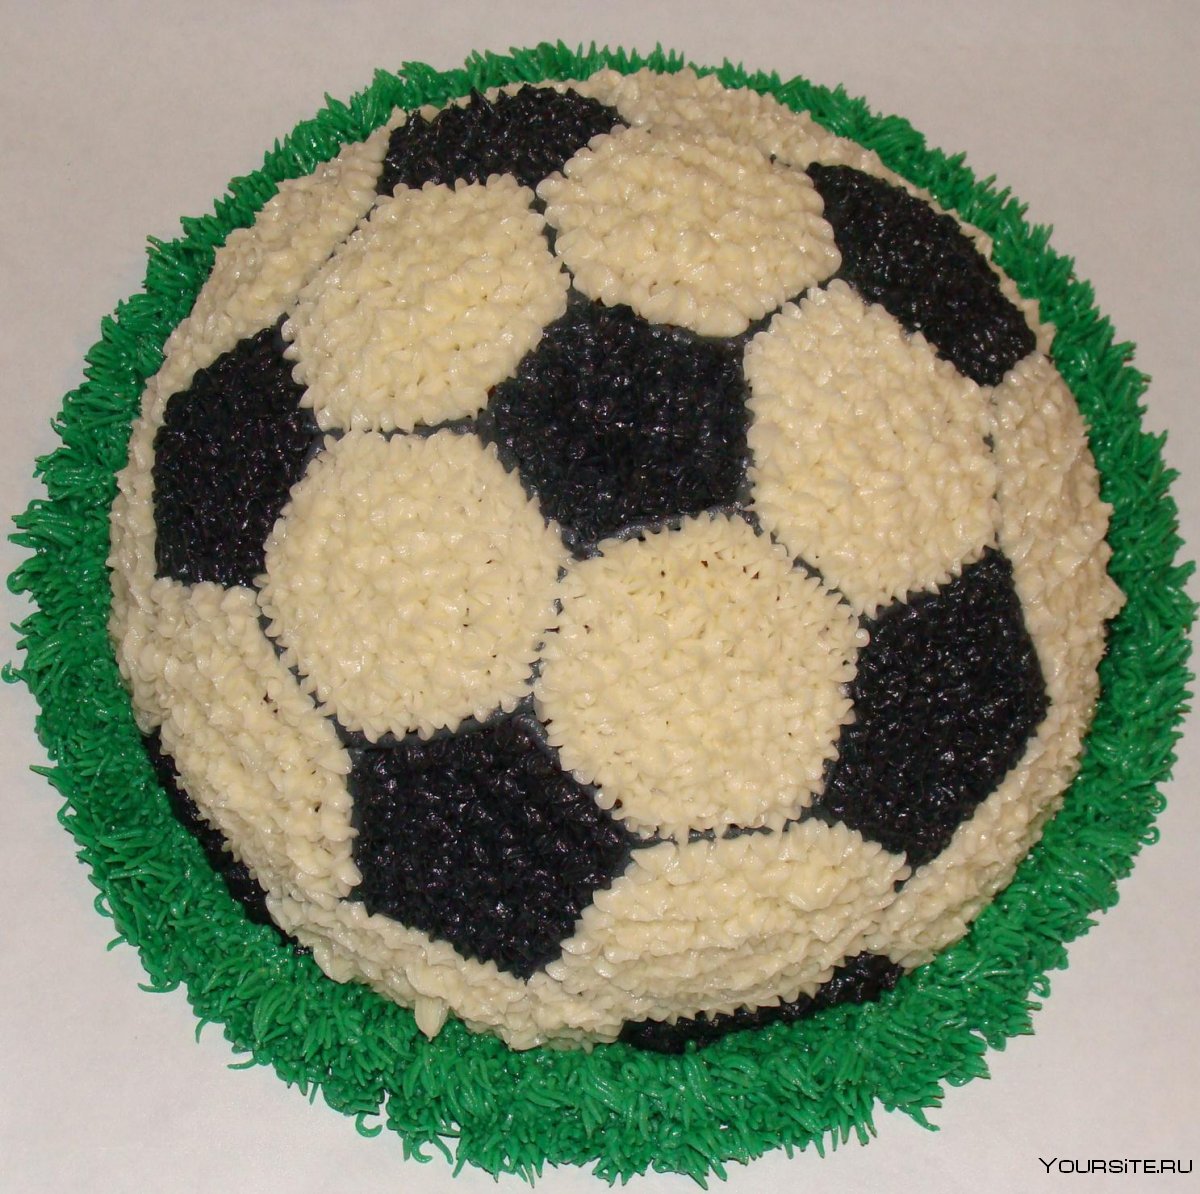 Торт футбольный мяч кремовый